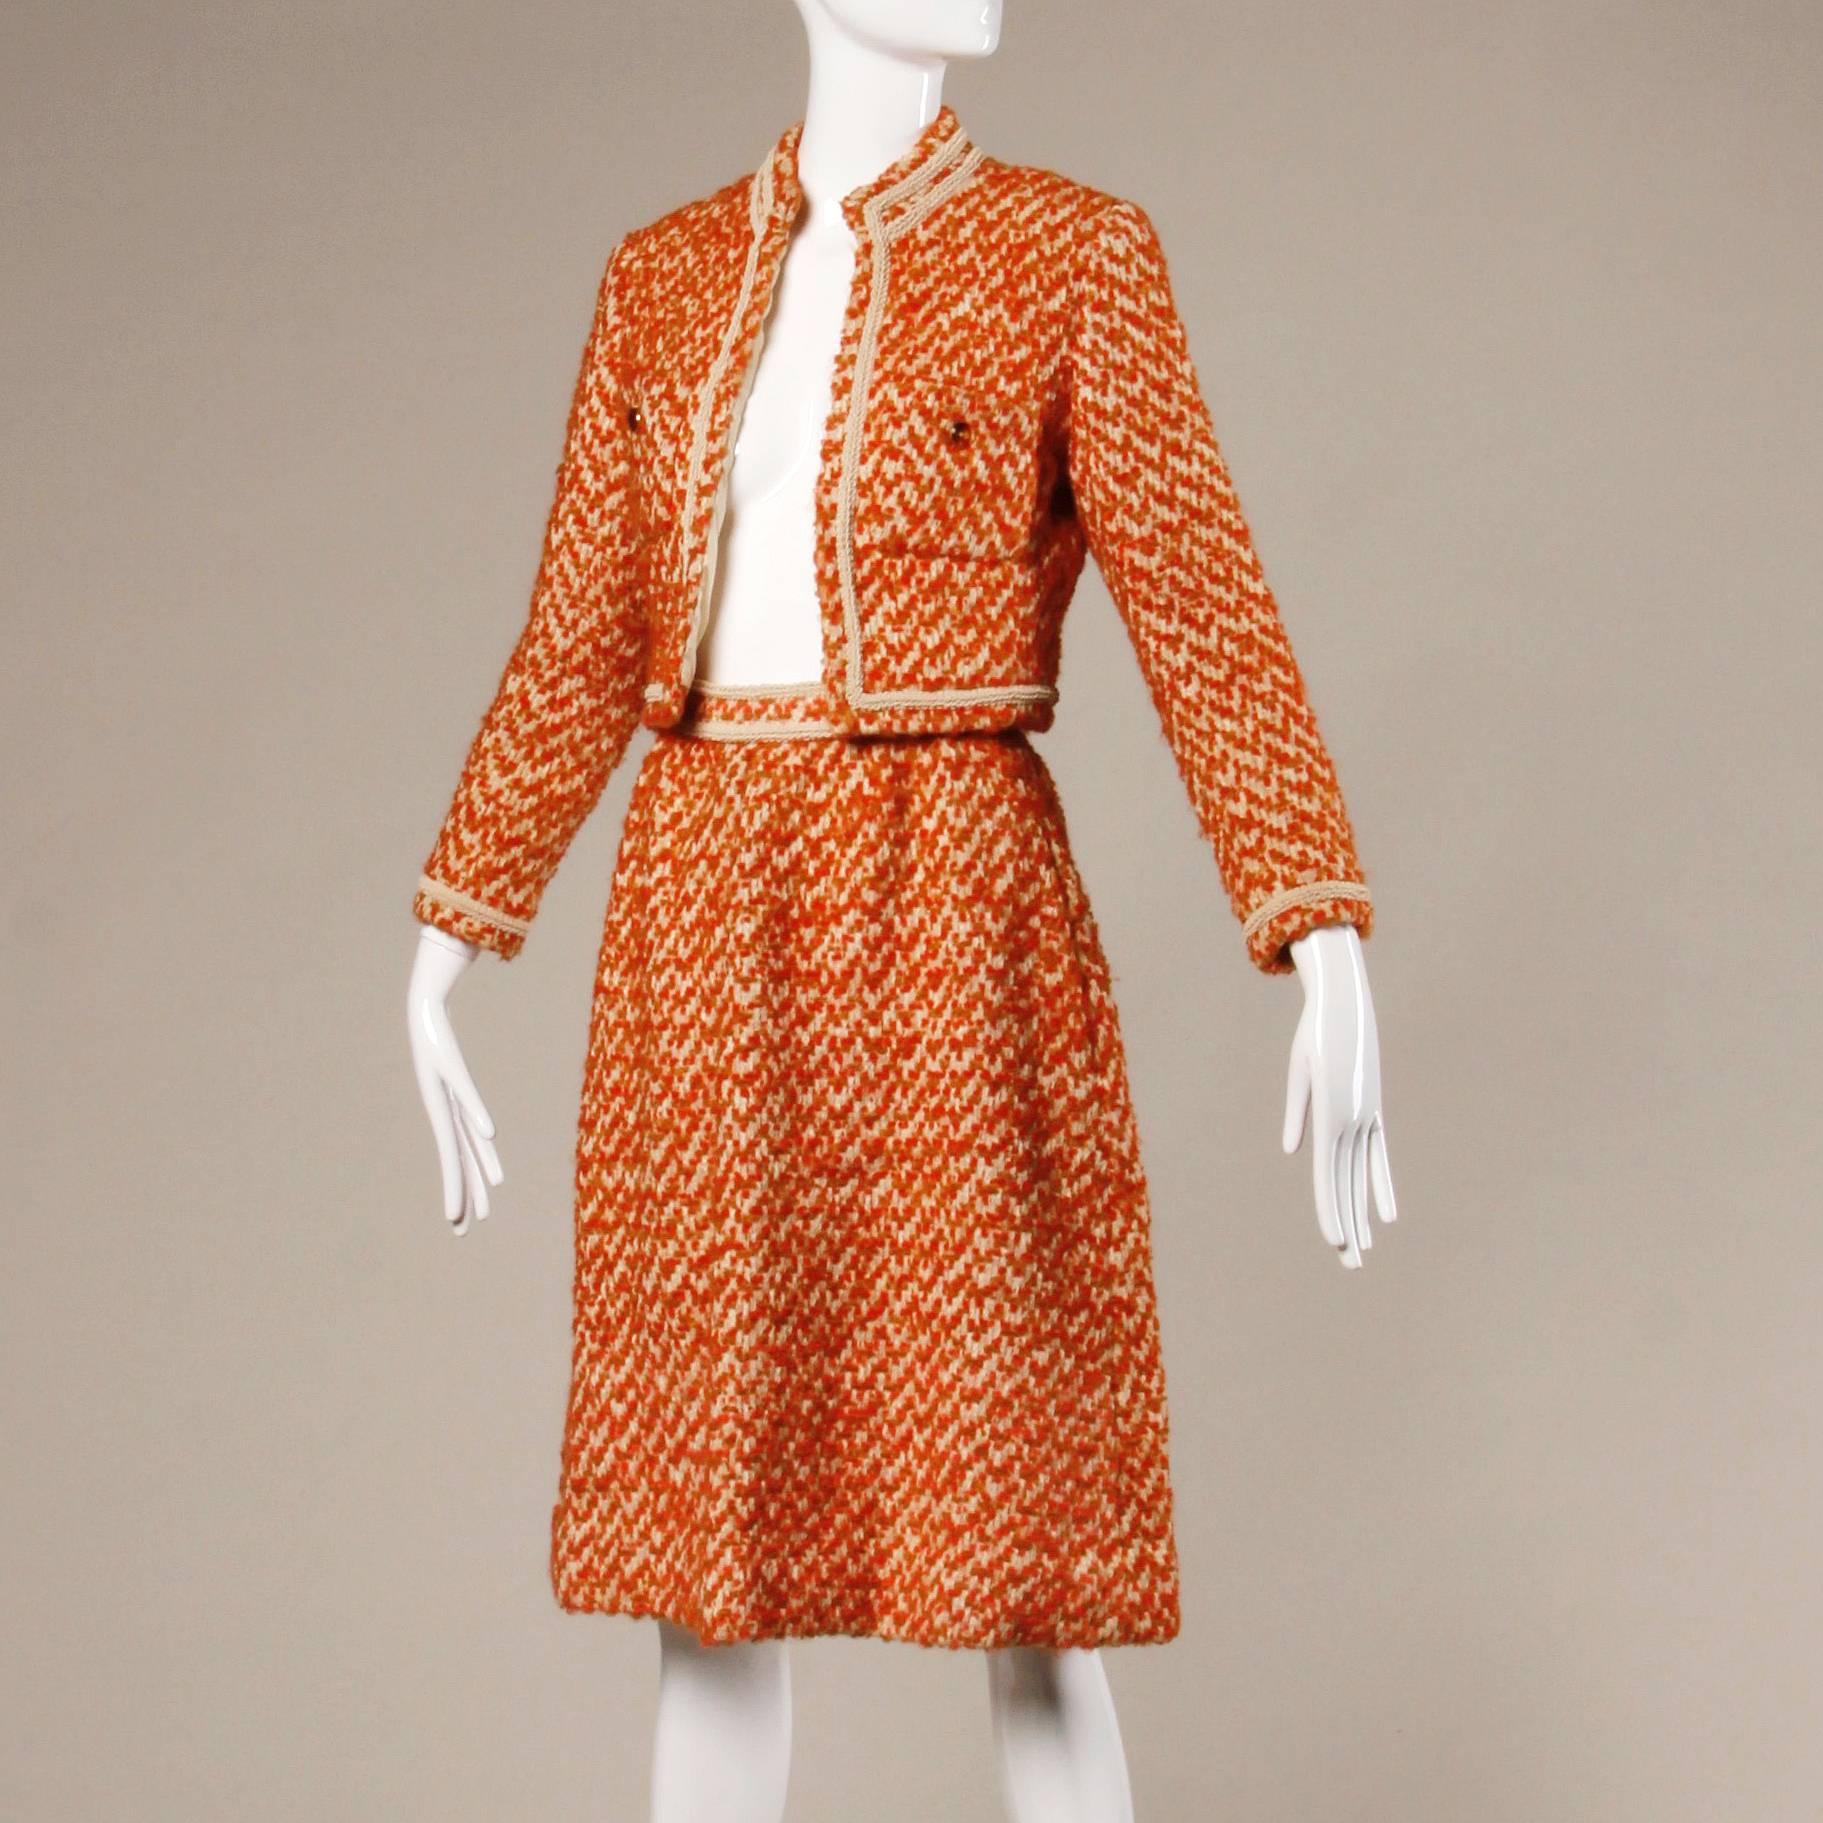 Atemberaubender Vintage-Couture-Anzug mit Jacke und Rock von Nina Ricci aus den 1960er Jahren. Bunte Bouclé-Wolle mit cremefarbenem Seidenfutter - jede Naht von Hand genäht! Hervorragender Zustand und Schneiderei.

Einzelheiten:

Vollständig mit